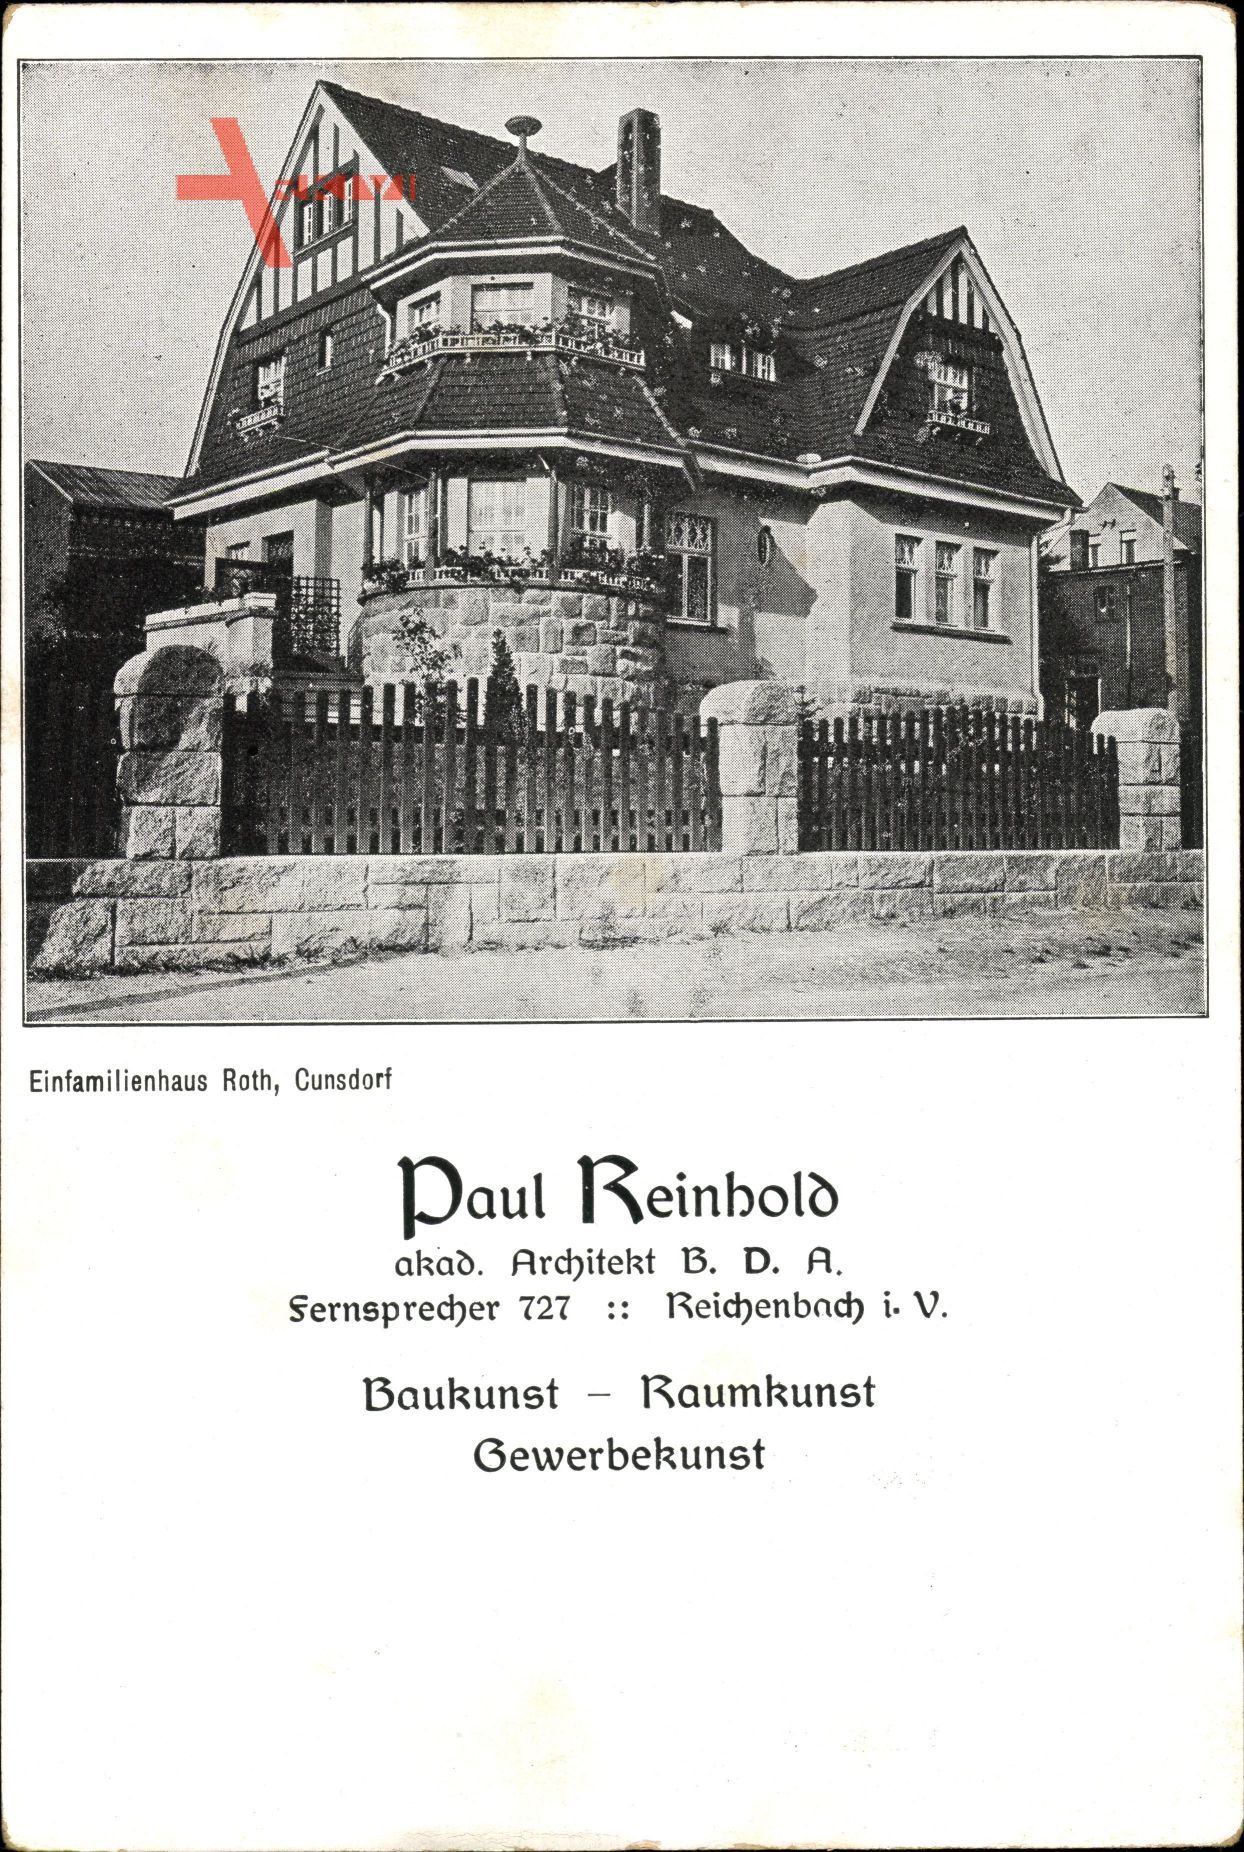 Cunsdorf Reichenbach Vogtland, Architekt P. Reinhold, Einfamilienhaus